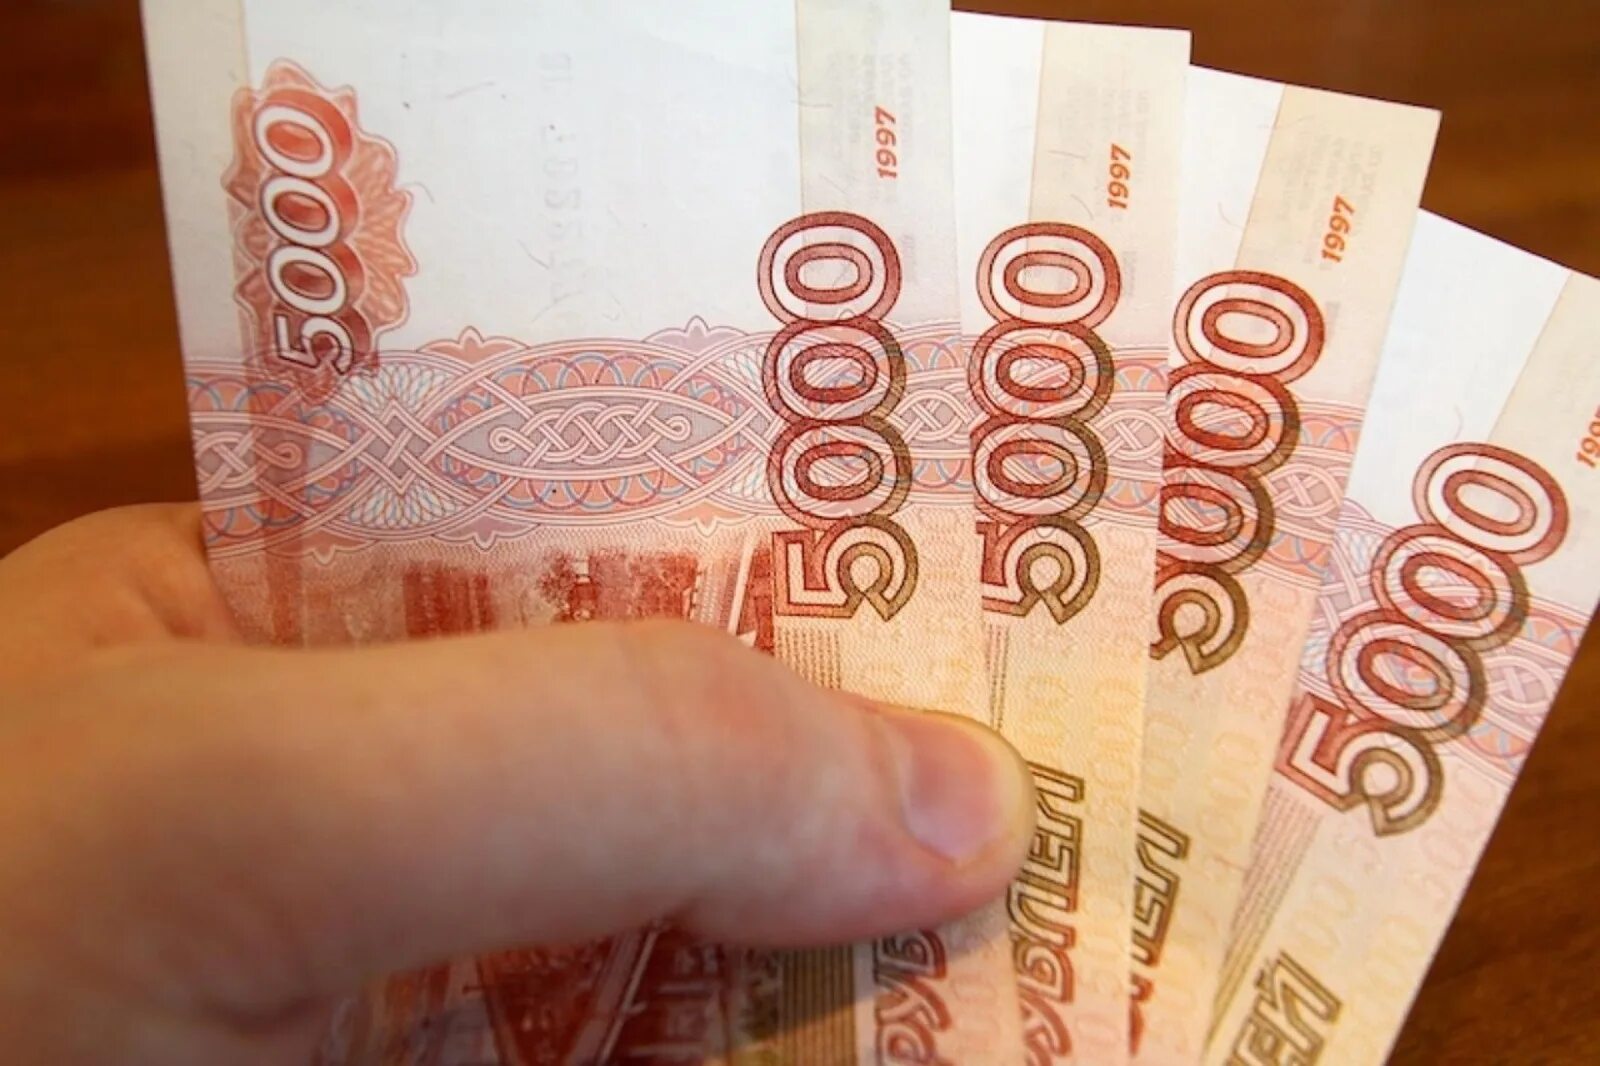 5000 т рублей